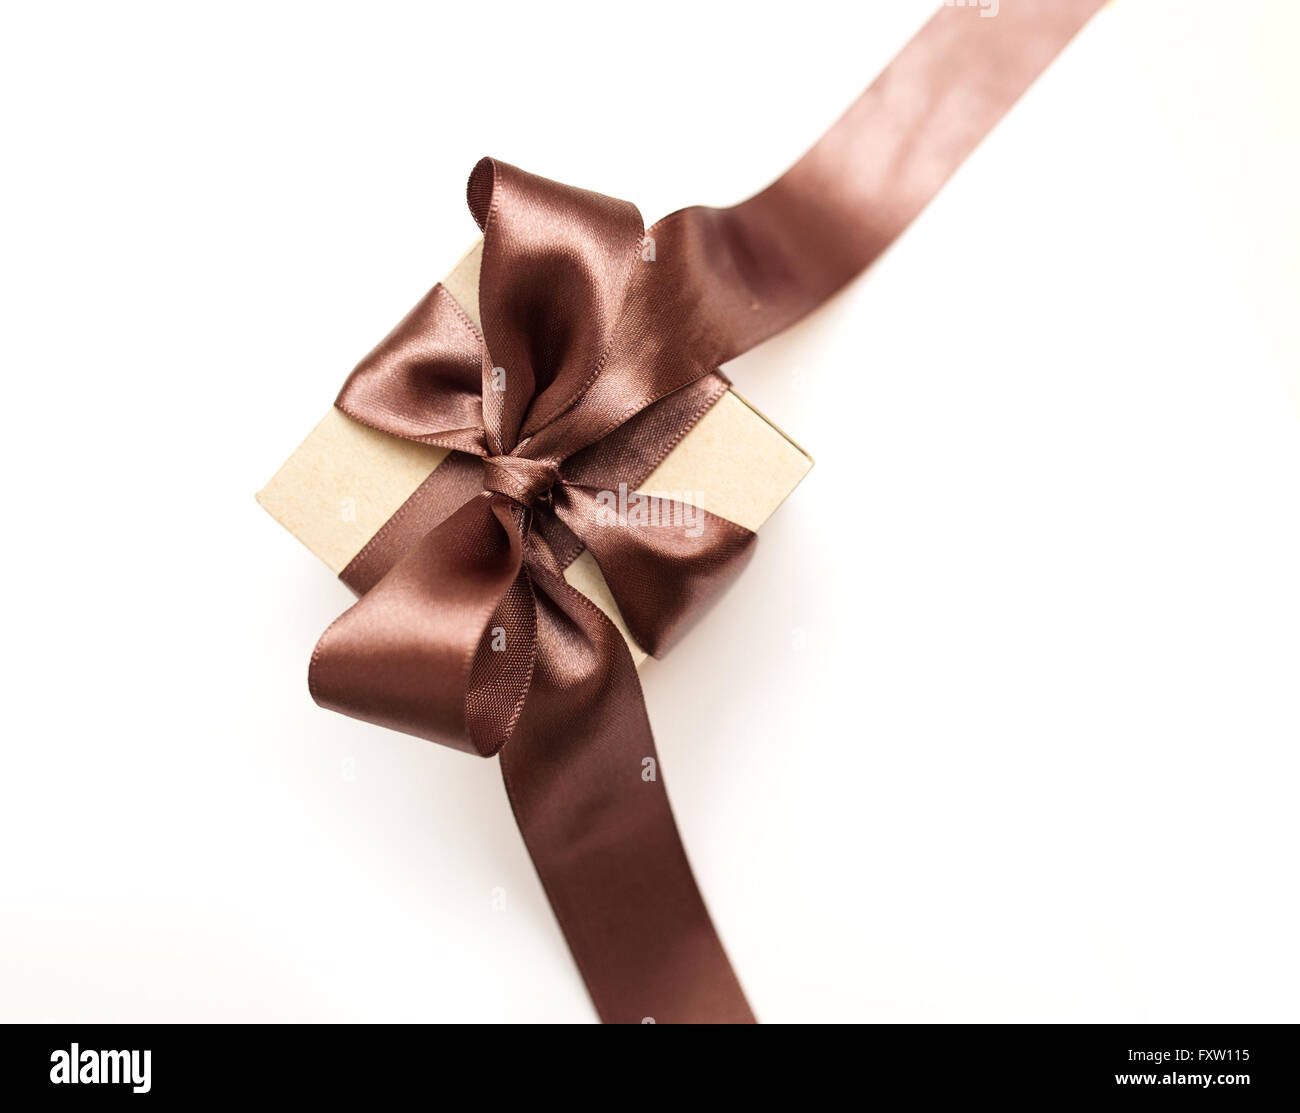 Boîte-cadeau avec brown bow on a white background Banque D'Images